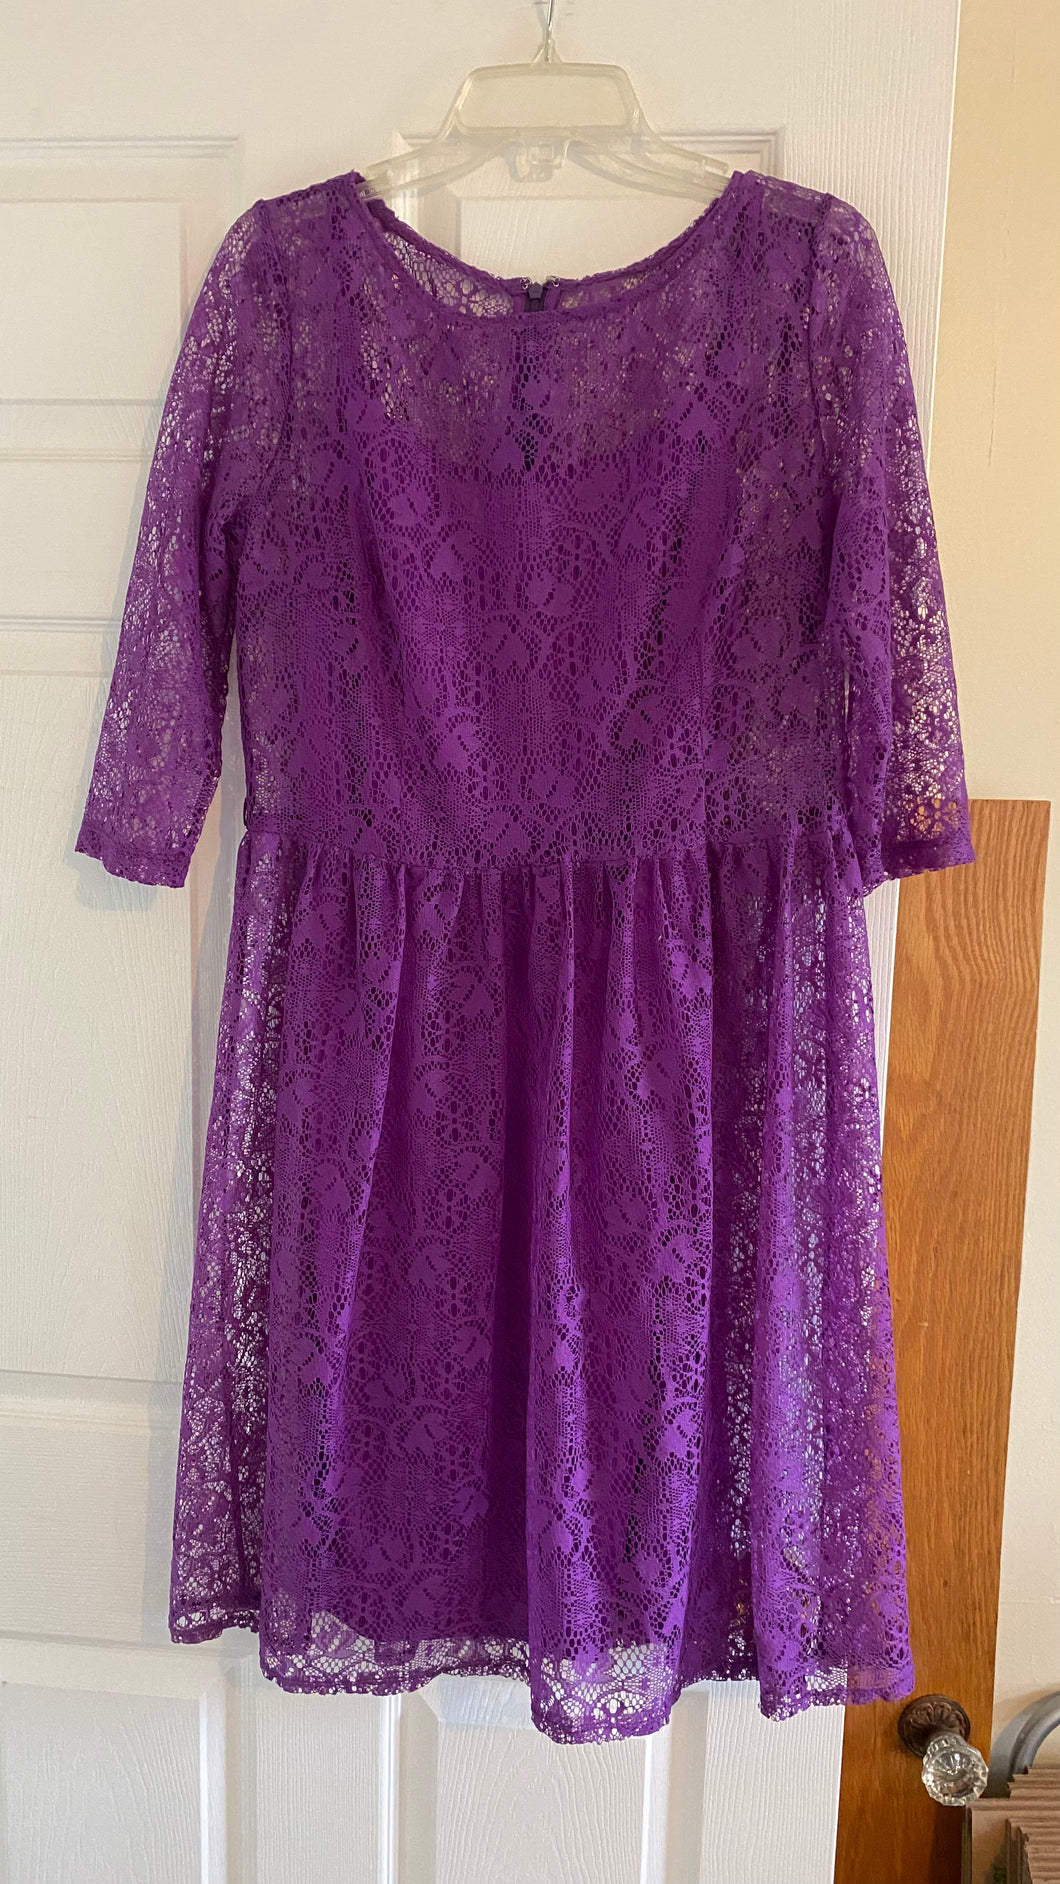 LYNC400-BI Purple Lace Dress. Size 12